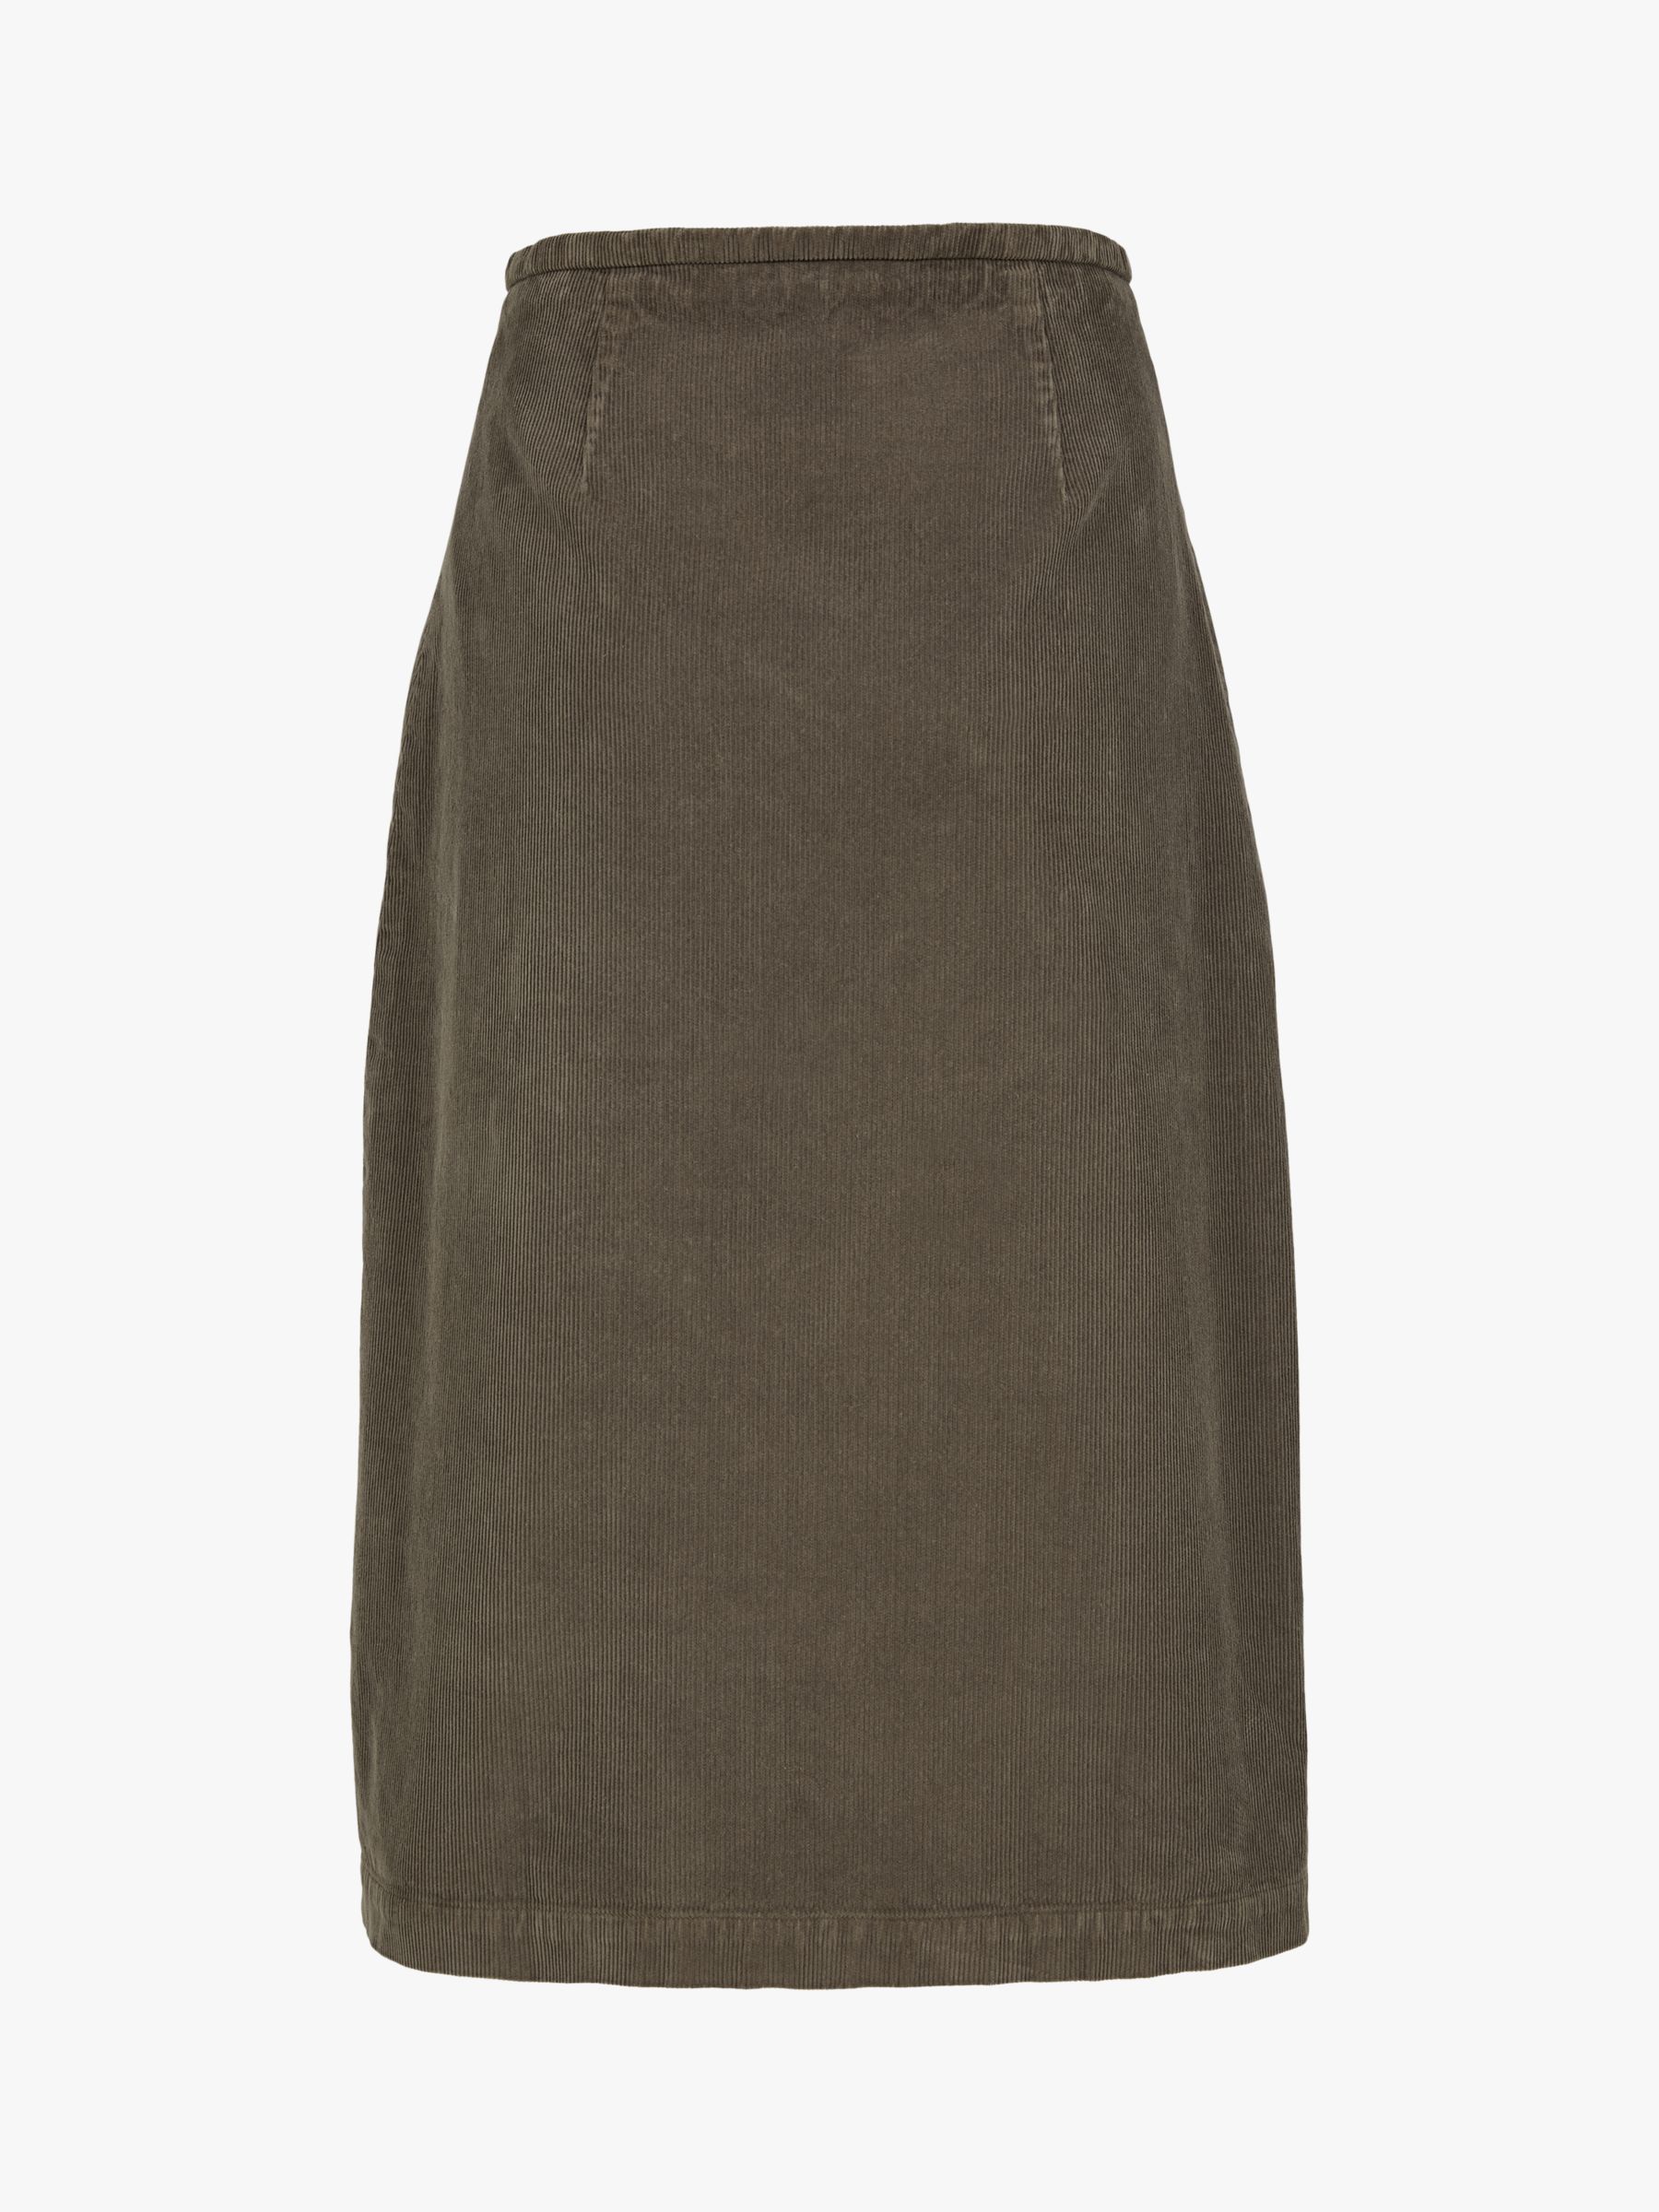 Вельветовая юбка Celtic & Co. из органического хлопка, грибной оттенок